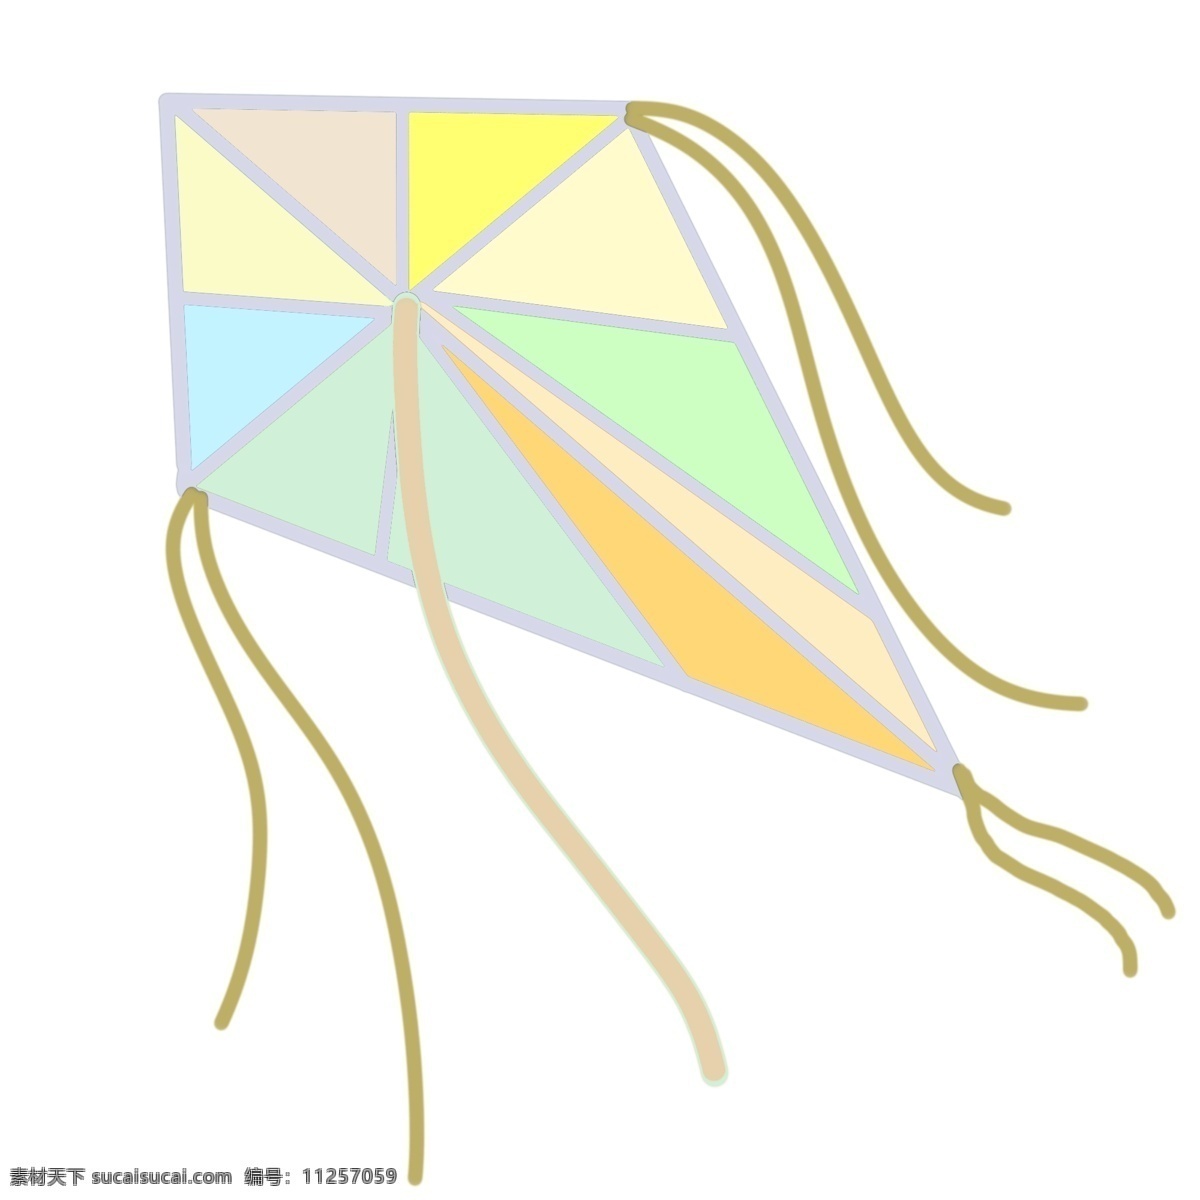 立体 风筝 装饰 插画 立体风筝 漂亮的风筝 彩色的风筝 风筝装饰 风筝插画 精美风筝